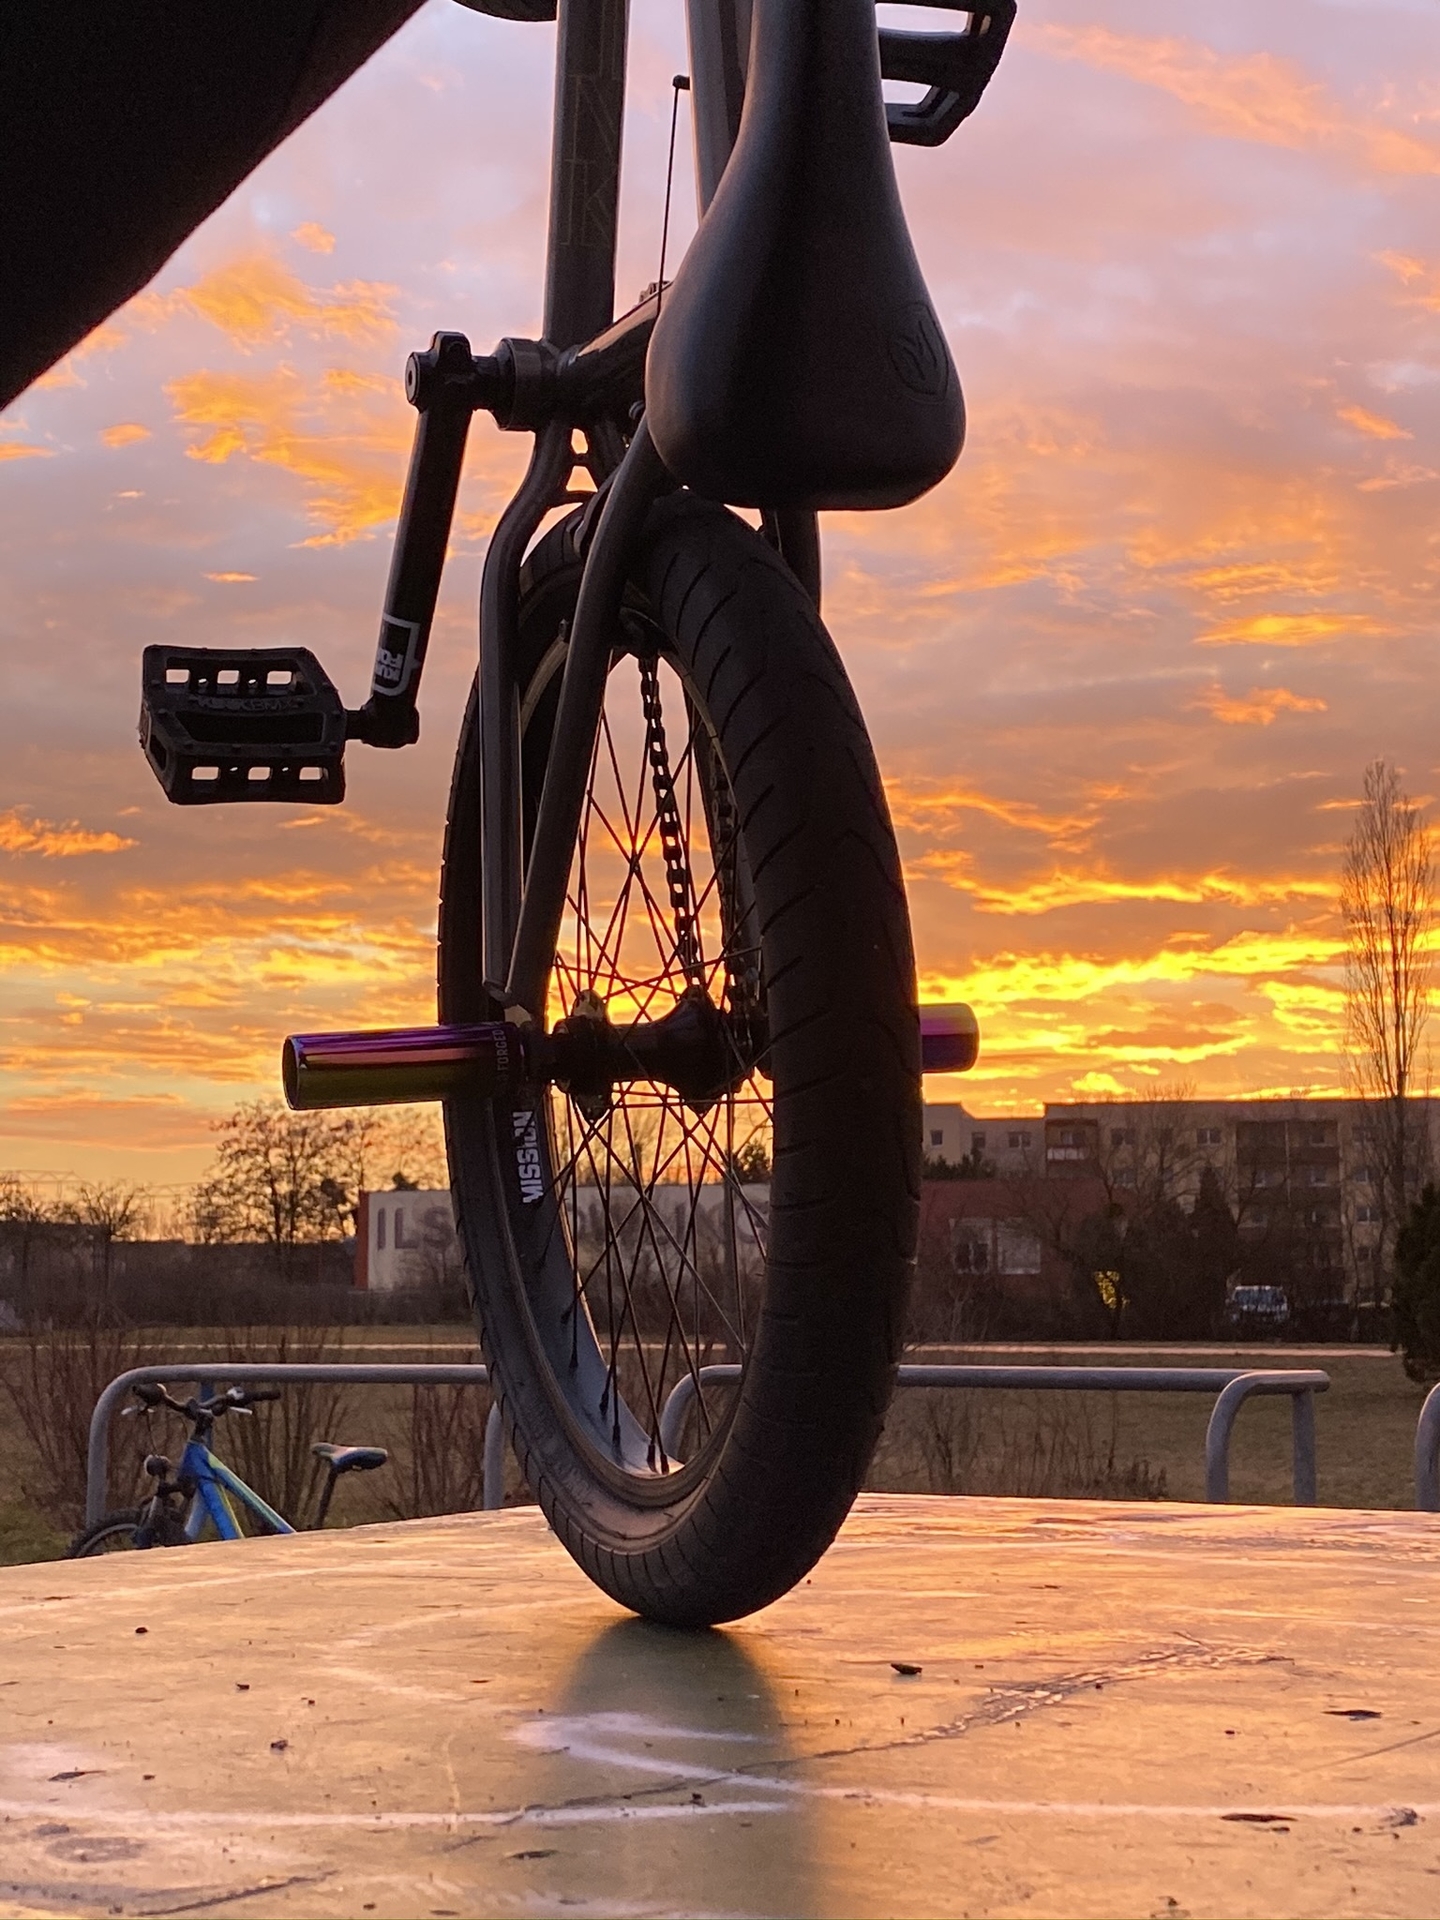 Bild: BMX-Bike auf Table mit Sonnenuntergang